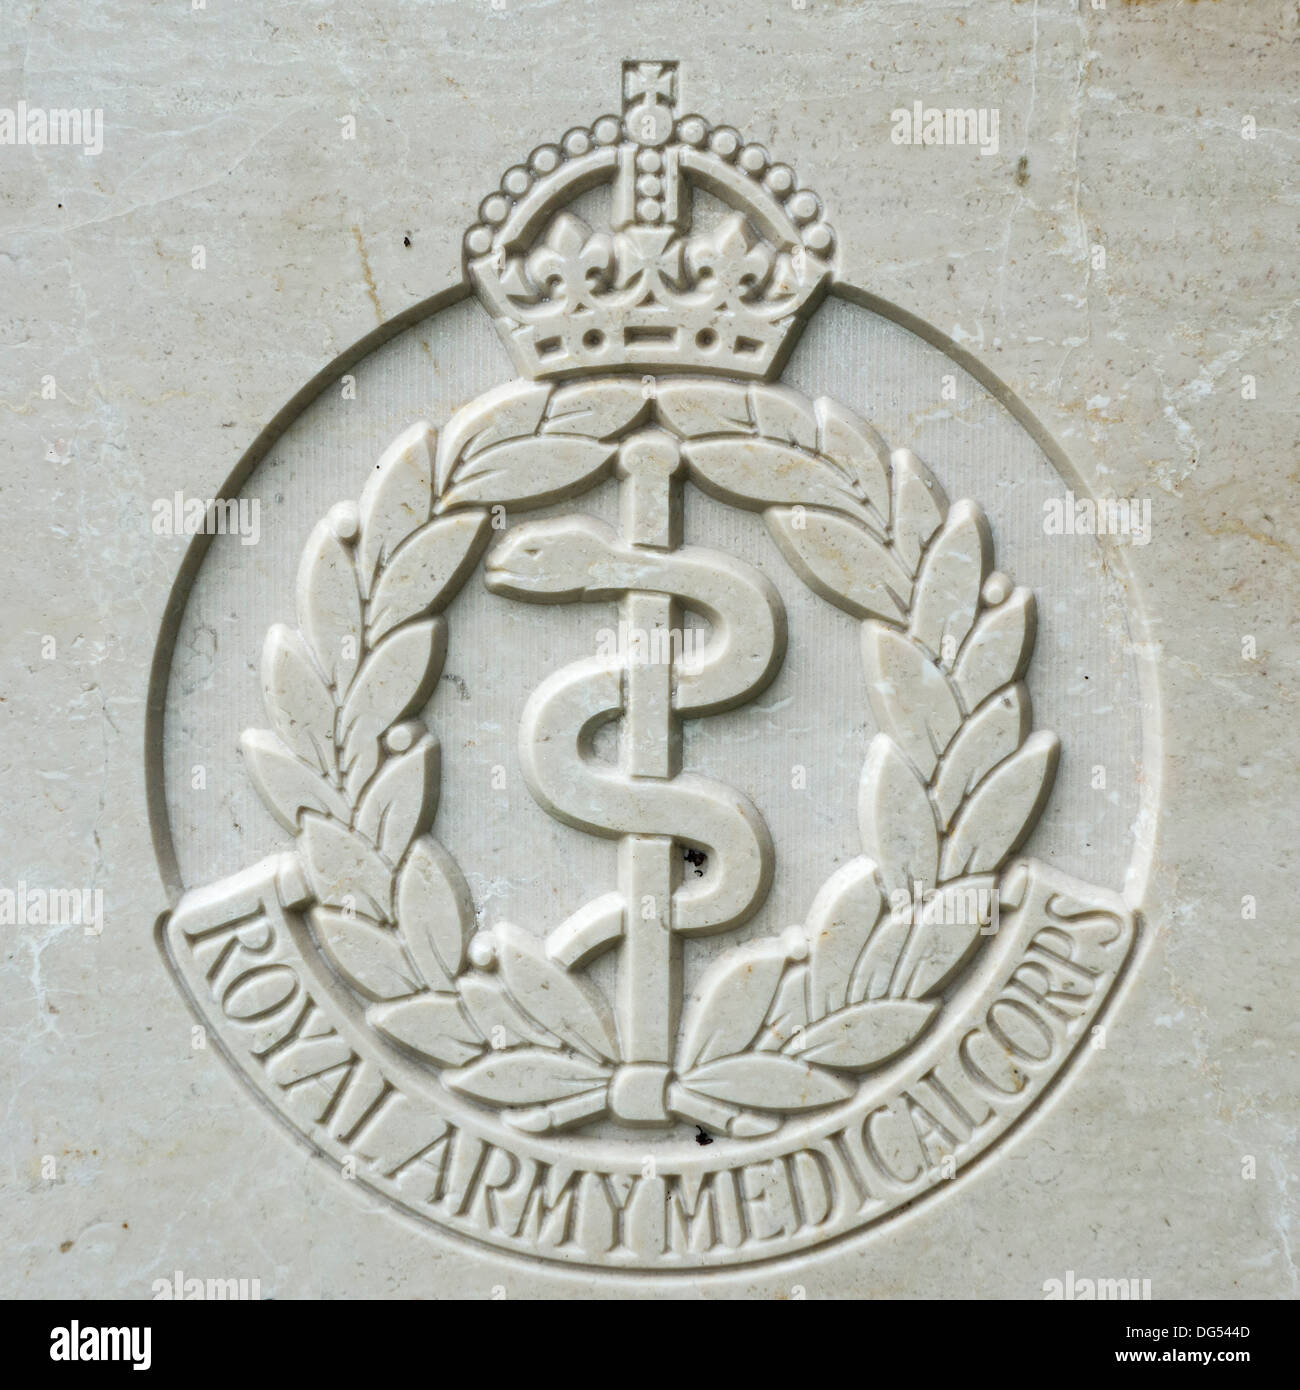 Royal Army Medical Corps insigne régimentaire sur tombe d'un soldat de la Seconde Guerre mondiale, cimetière de la Commonwealth War Graves Commission Banque D'Images